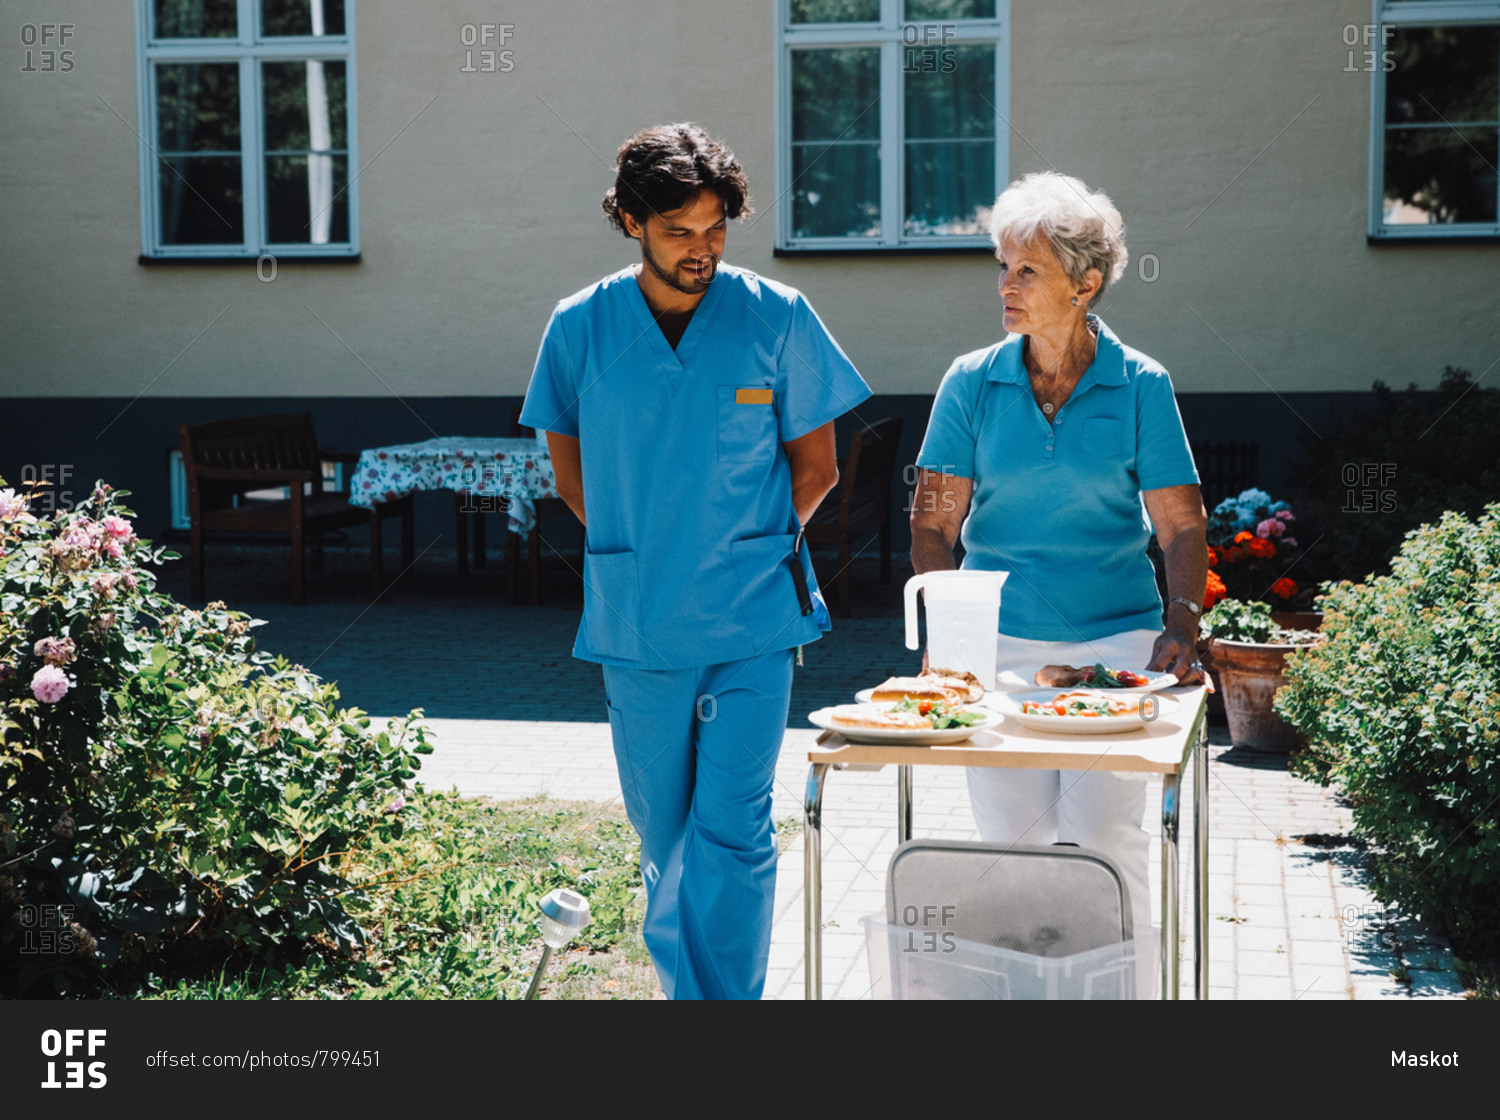 Male nurse walking with senior woman pushing food cart against nursing home